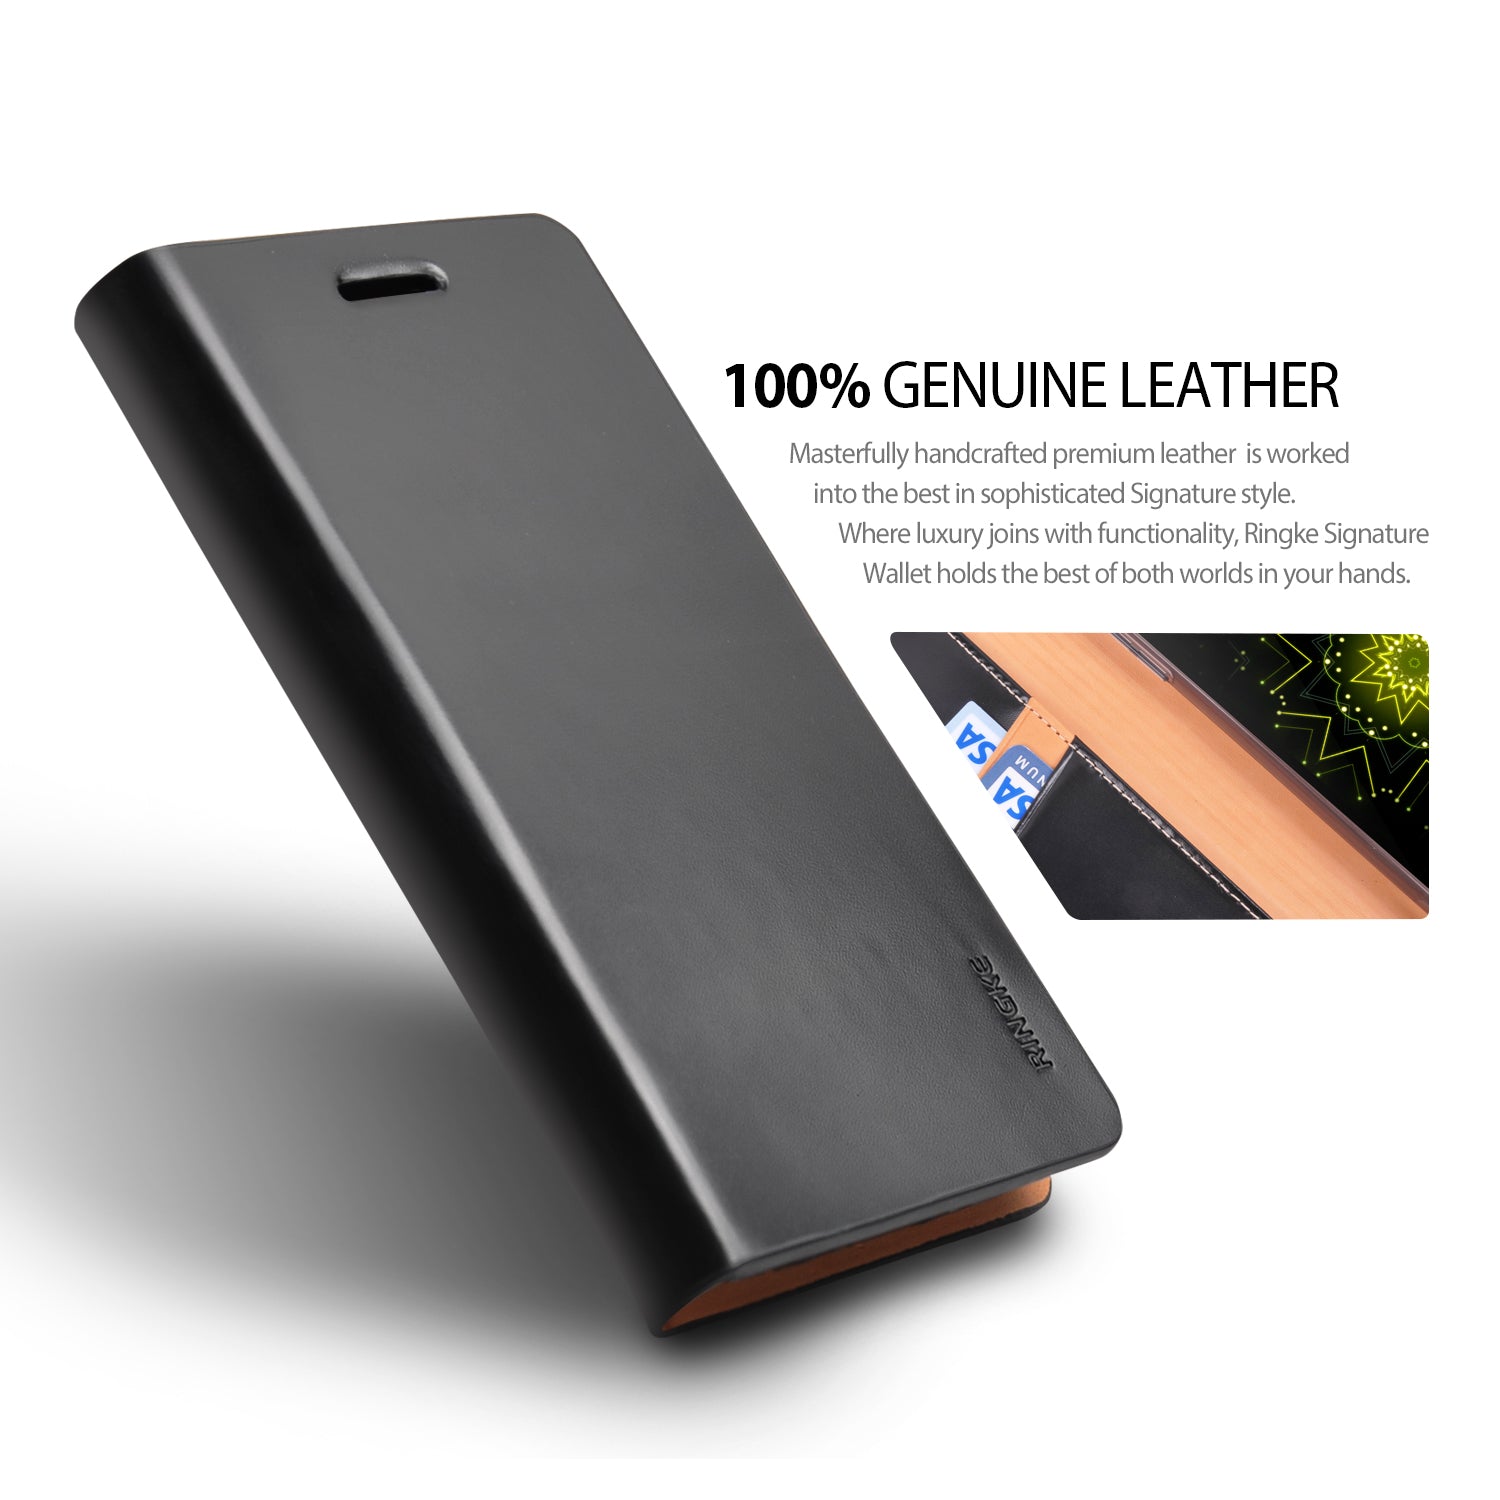 LG G5 Case | Signature - 100% Genuine Leather